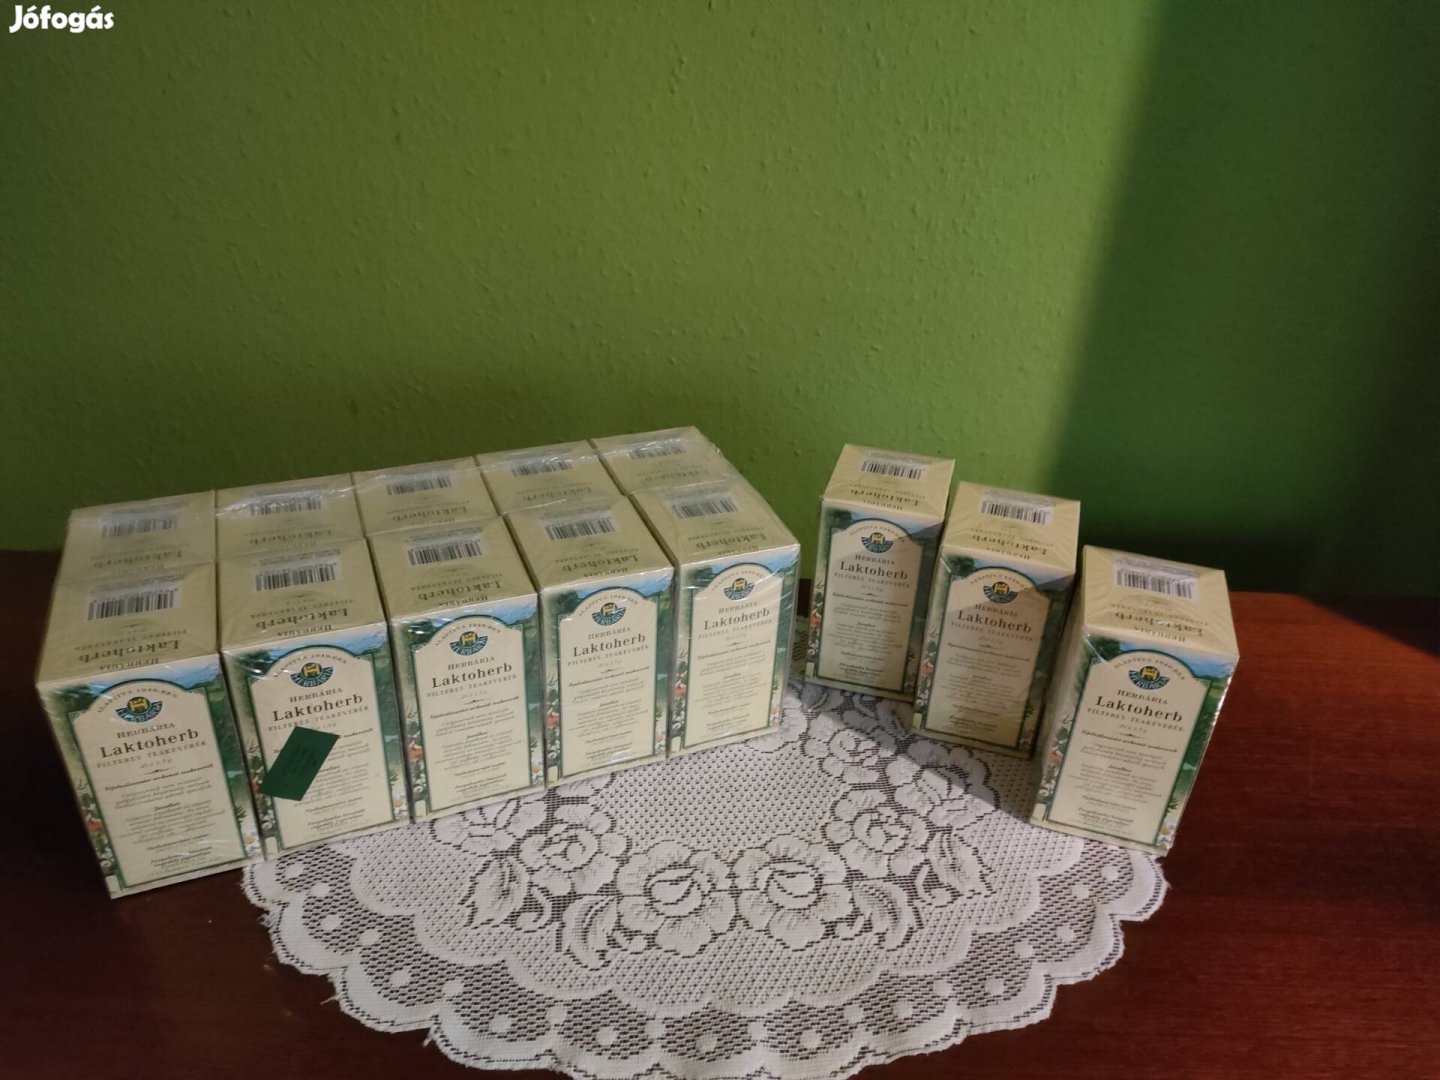 Laktoherb tea 13 doboz (tejszaporító tea)!